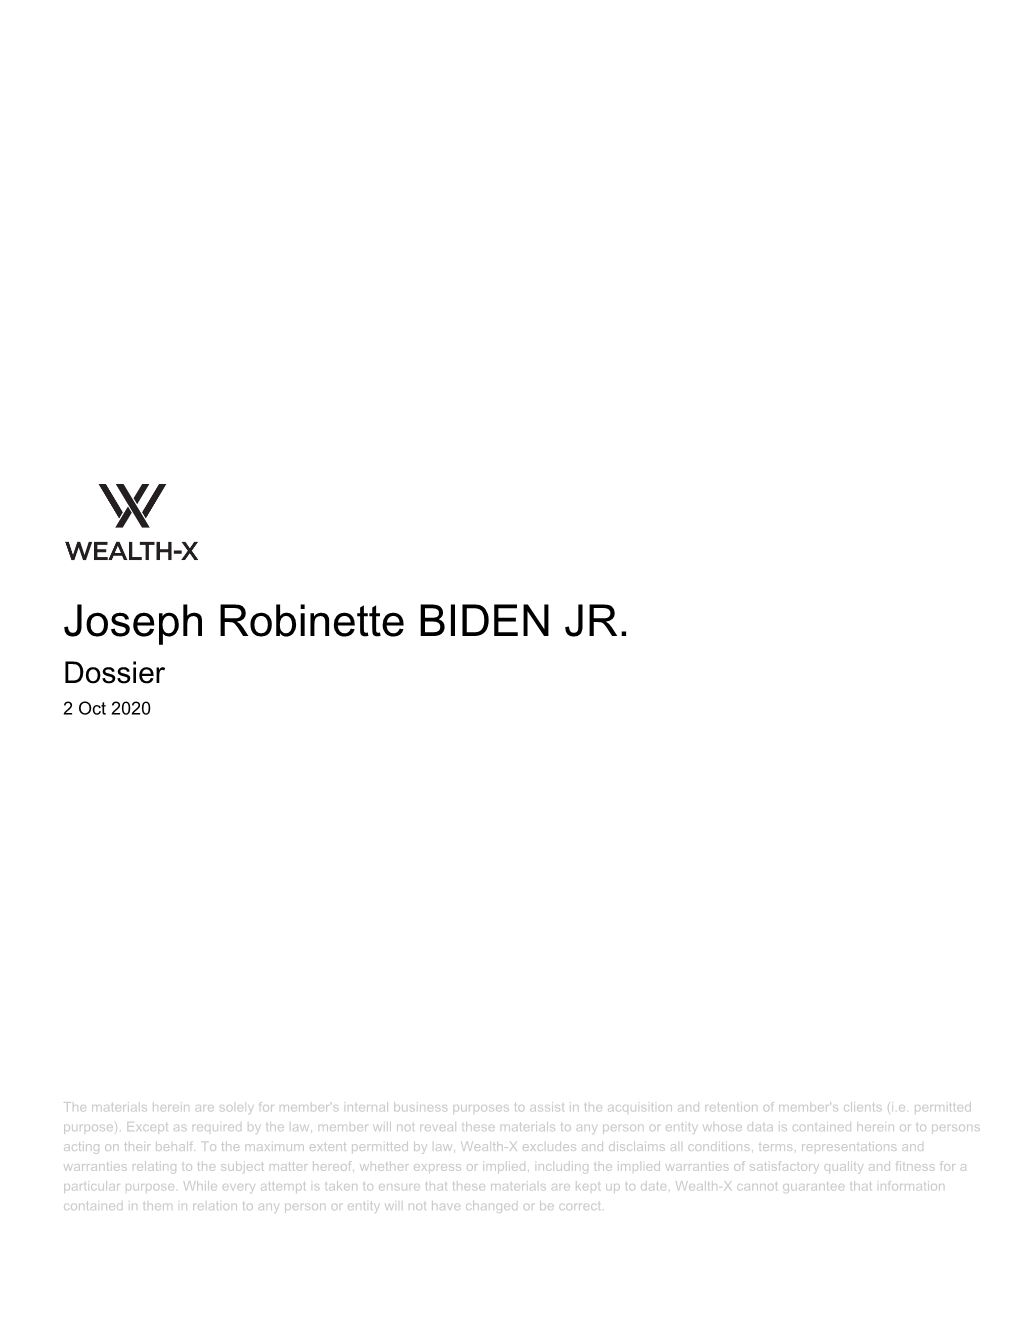 Joseph Robinette BIDEN JR